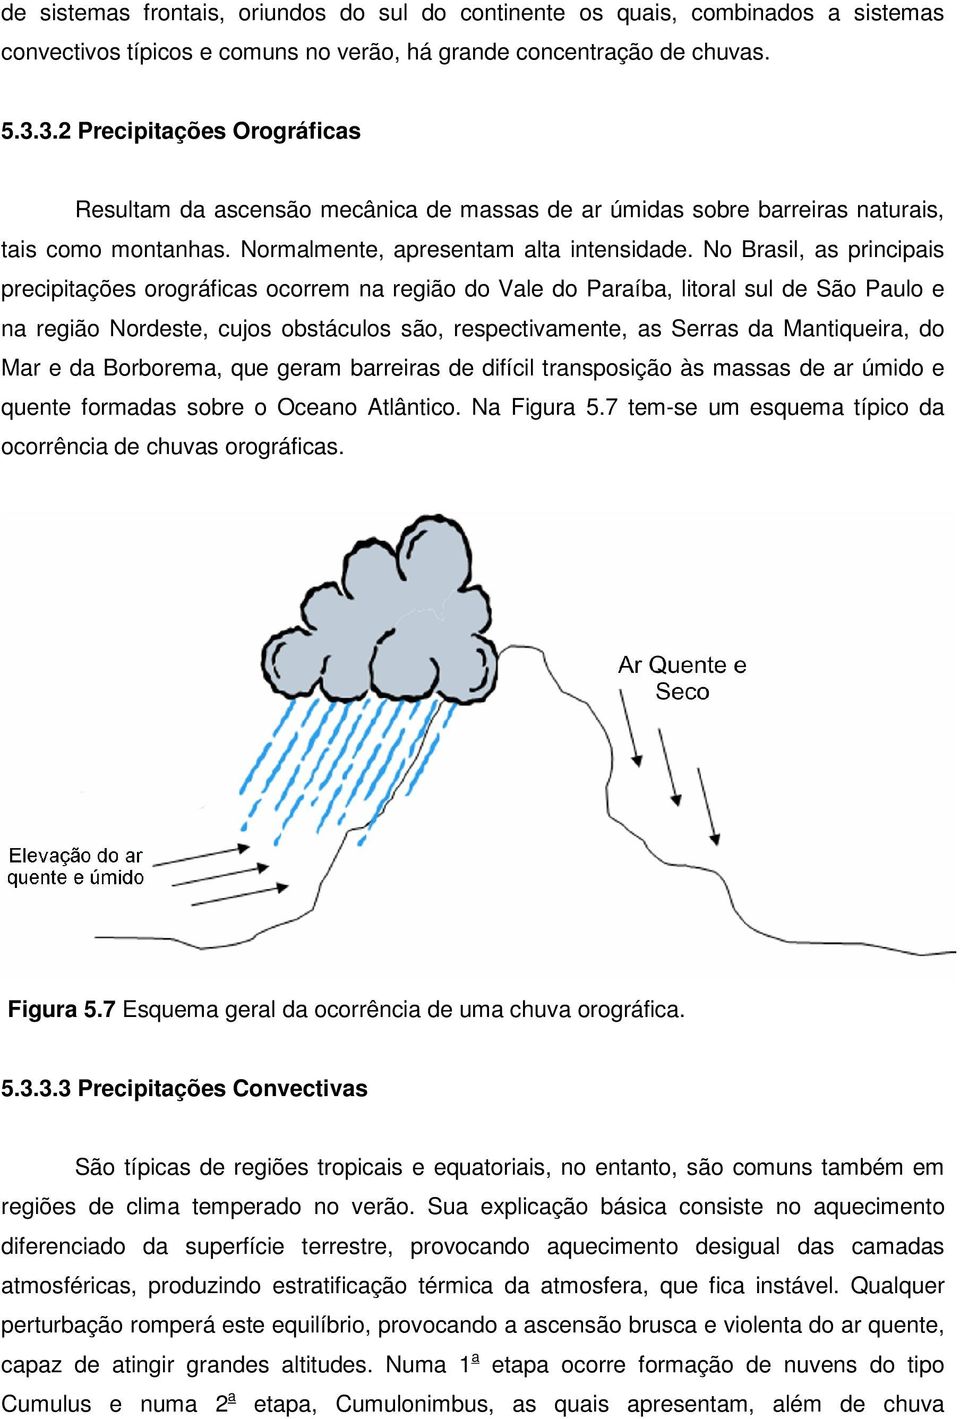 No Brasil, as principais precipitações orográficas ocorrem na região do Vale do Paraíba, litoral sul de São Paulo e na região Nordeste, cujos obstáculos são, respectivamente, as Serras da